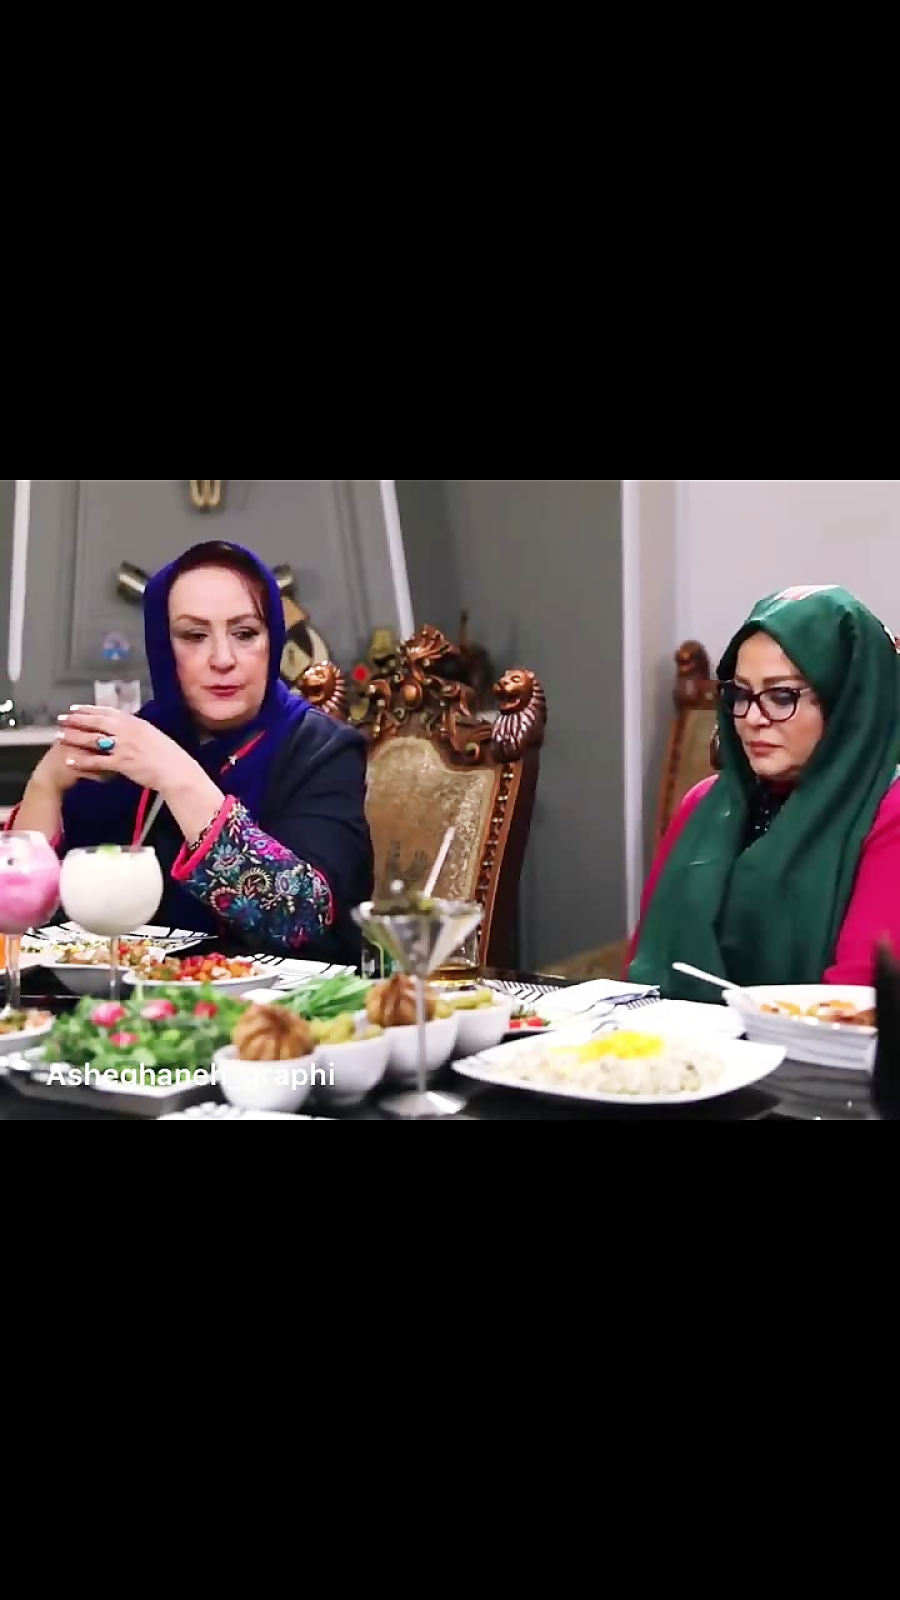 قسمت جالب برنامه شام ایرانی بهاره رهنما میگه من شوهر دوست دارم زمان65ثانیه